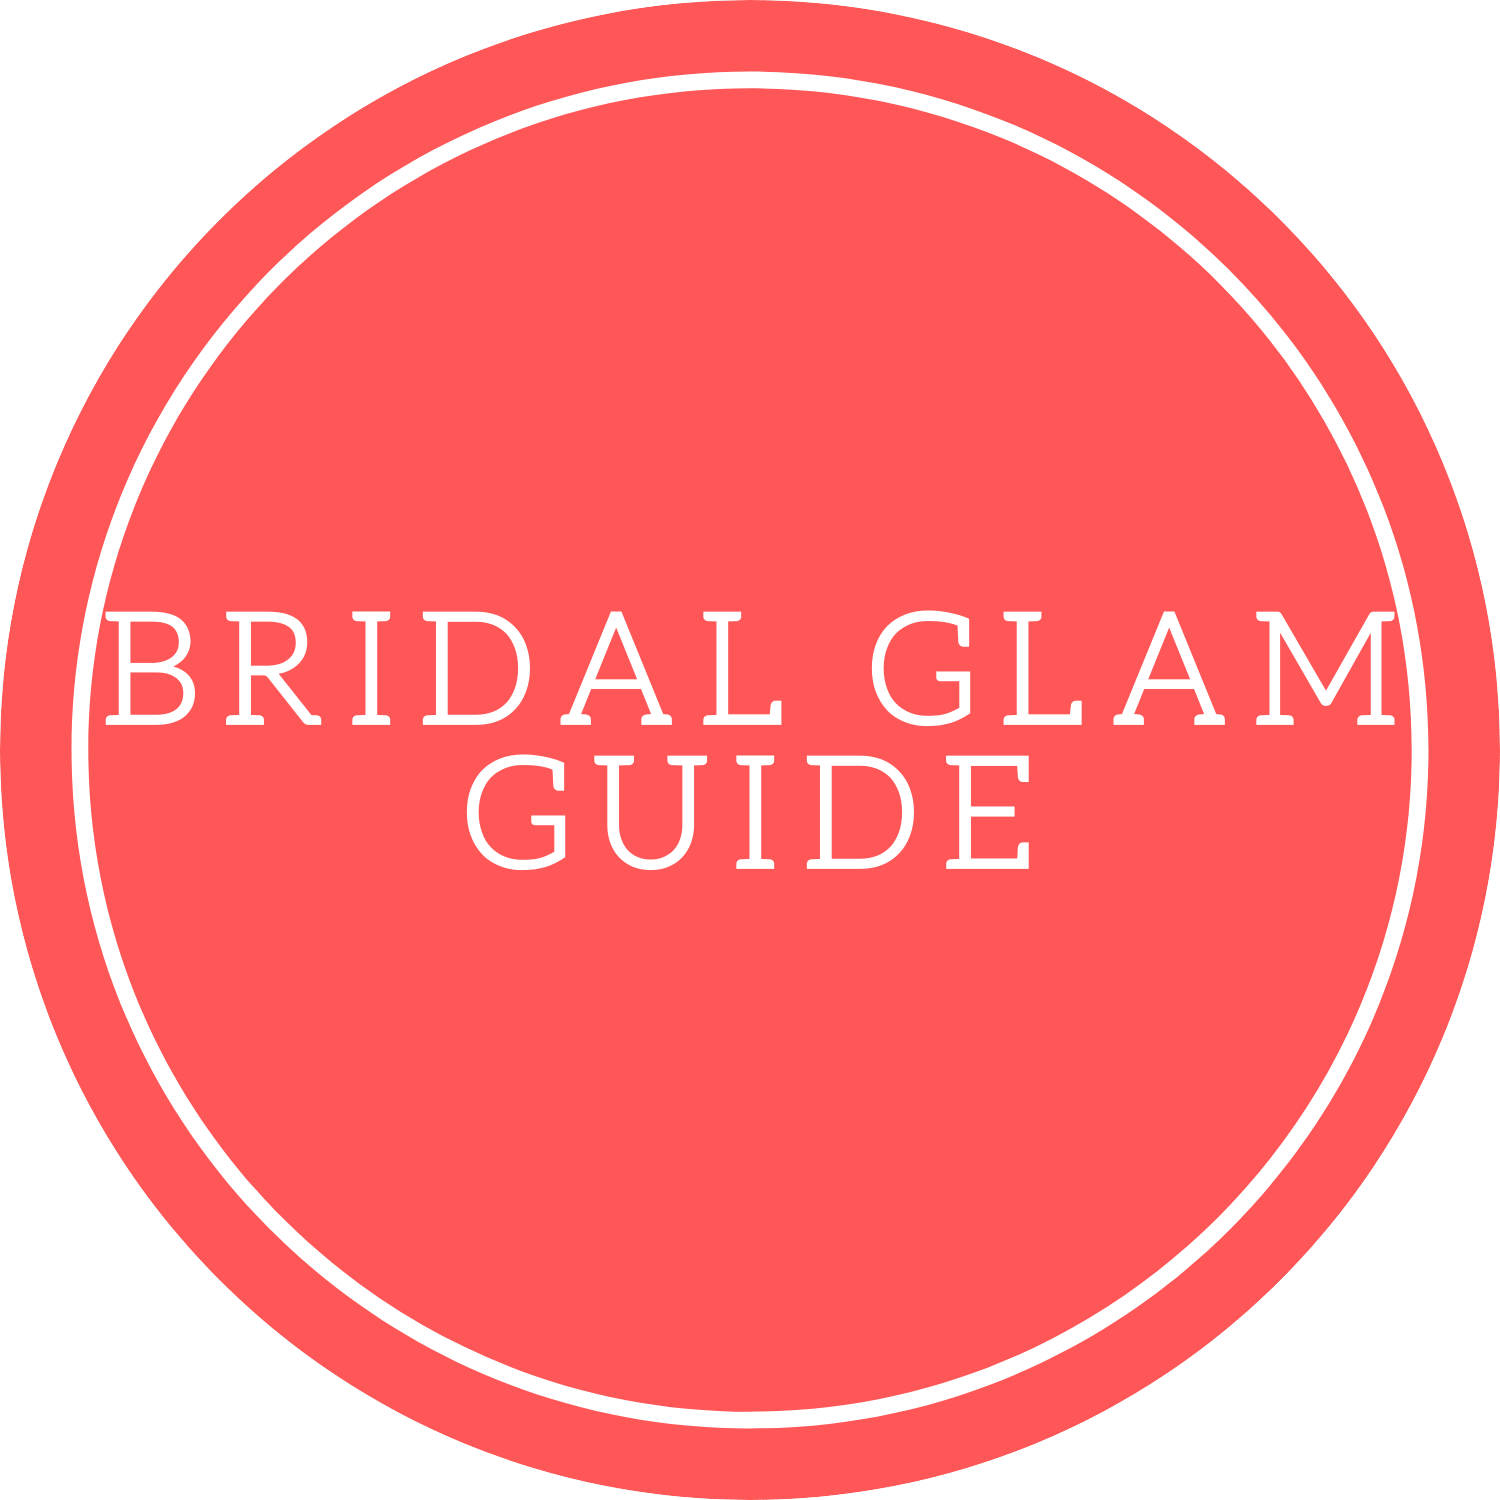 15 वेडिंग हेयर स्टाइल दुल्हन के लिए - Wedding Hairstyle for Brides